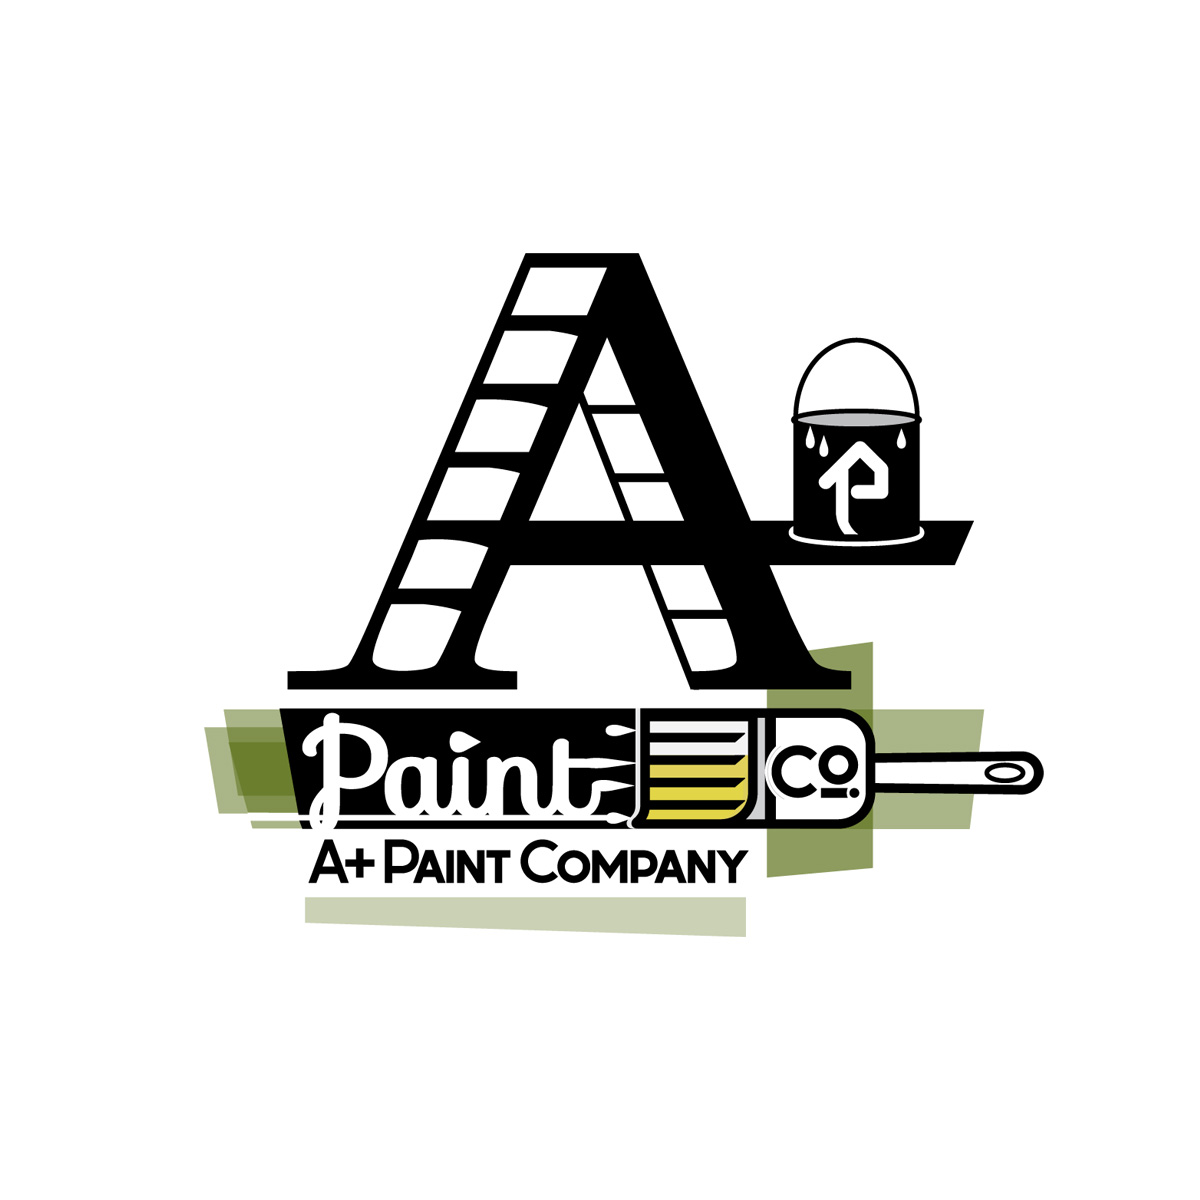 painting company typographic logo